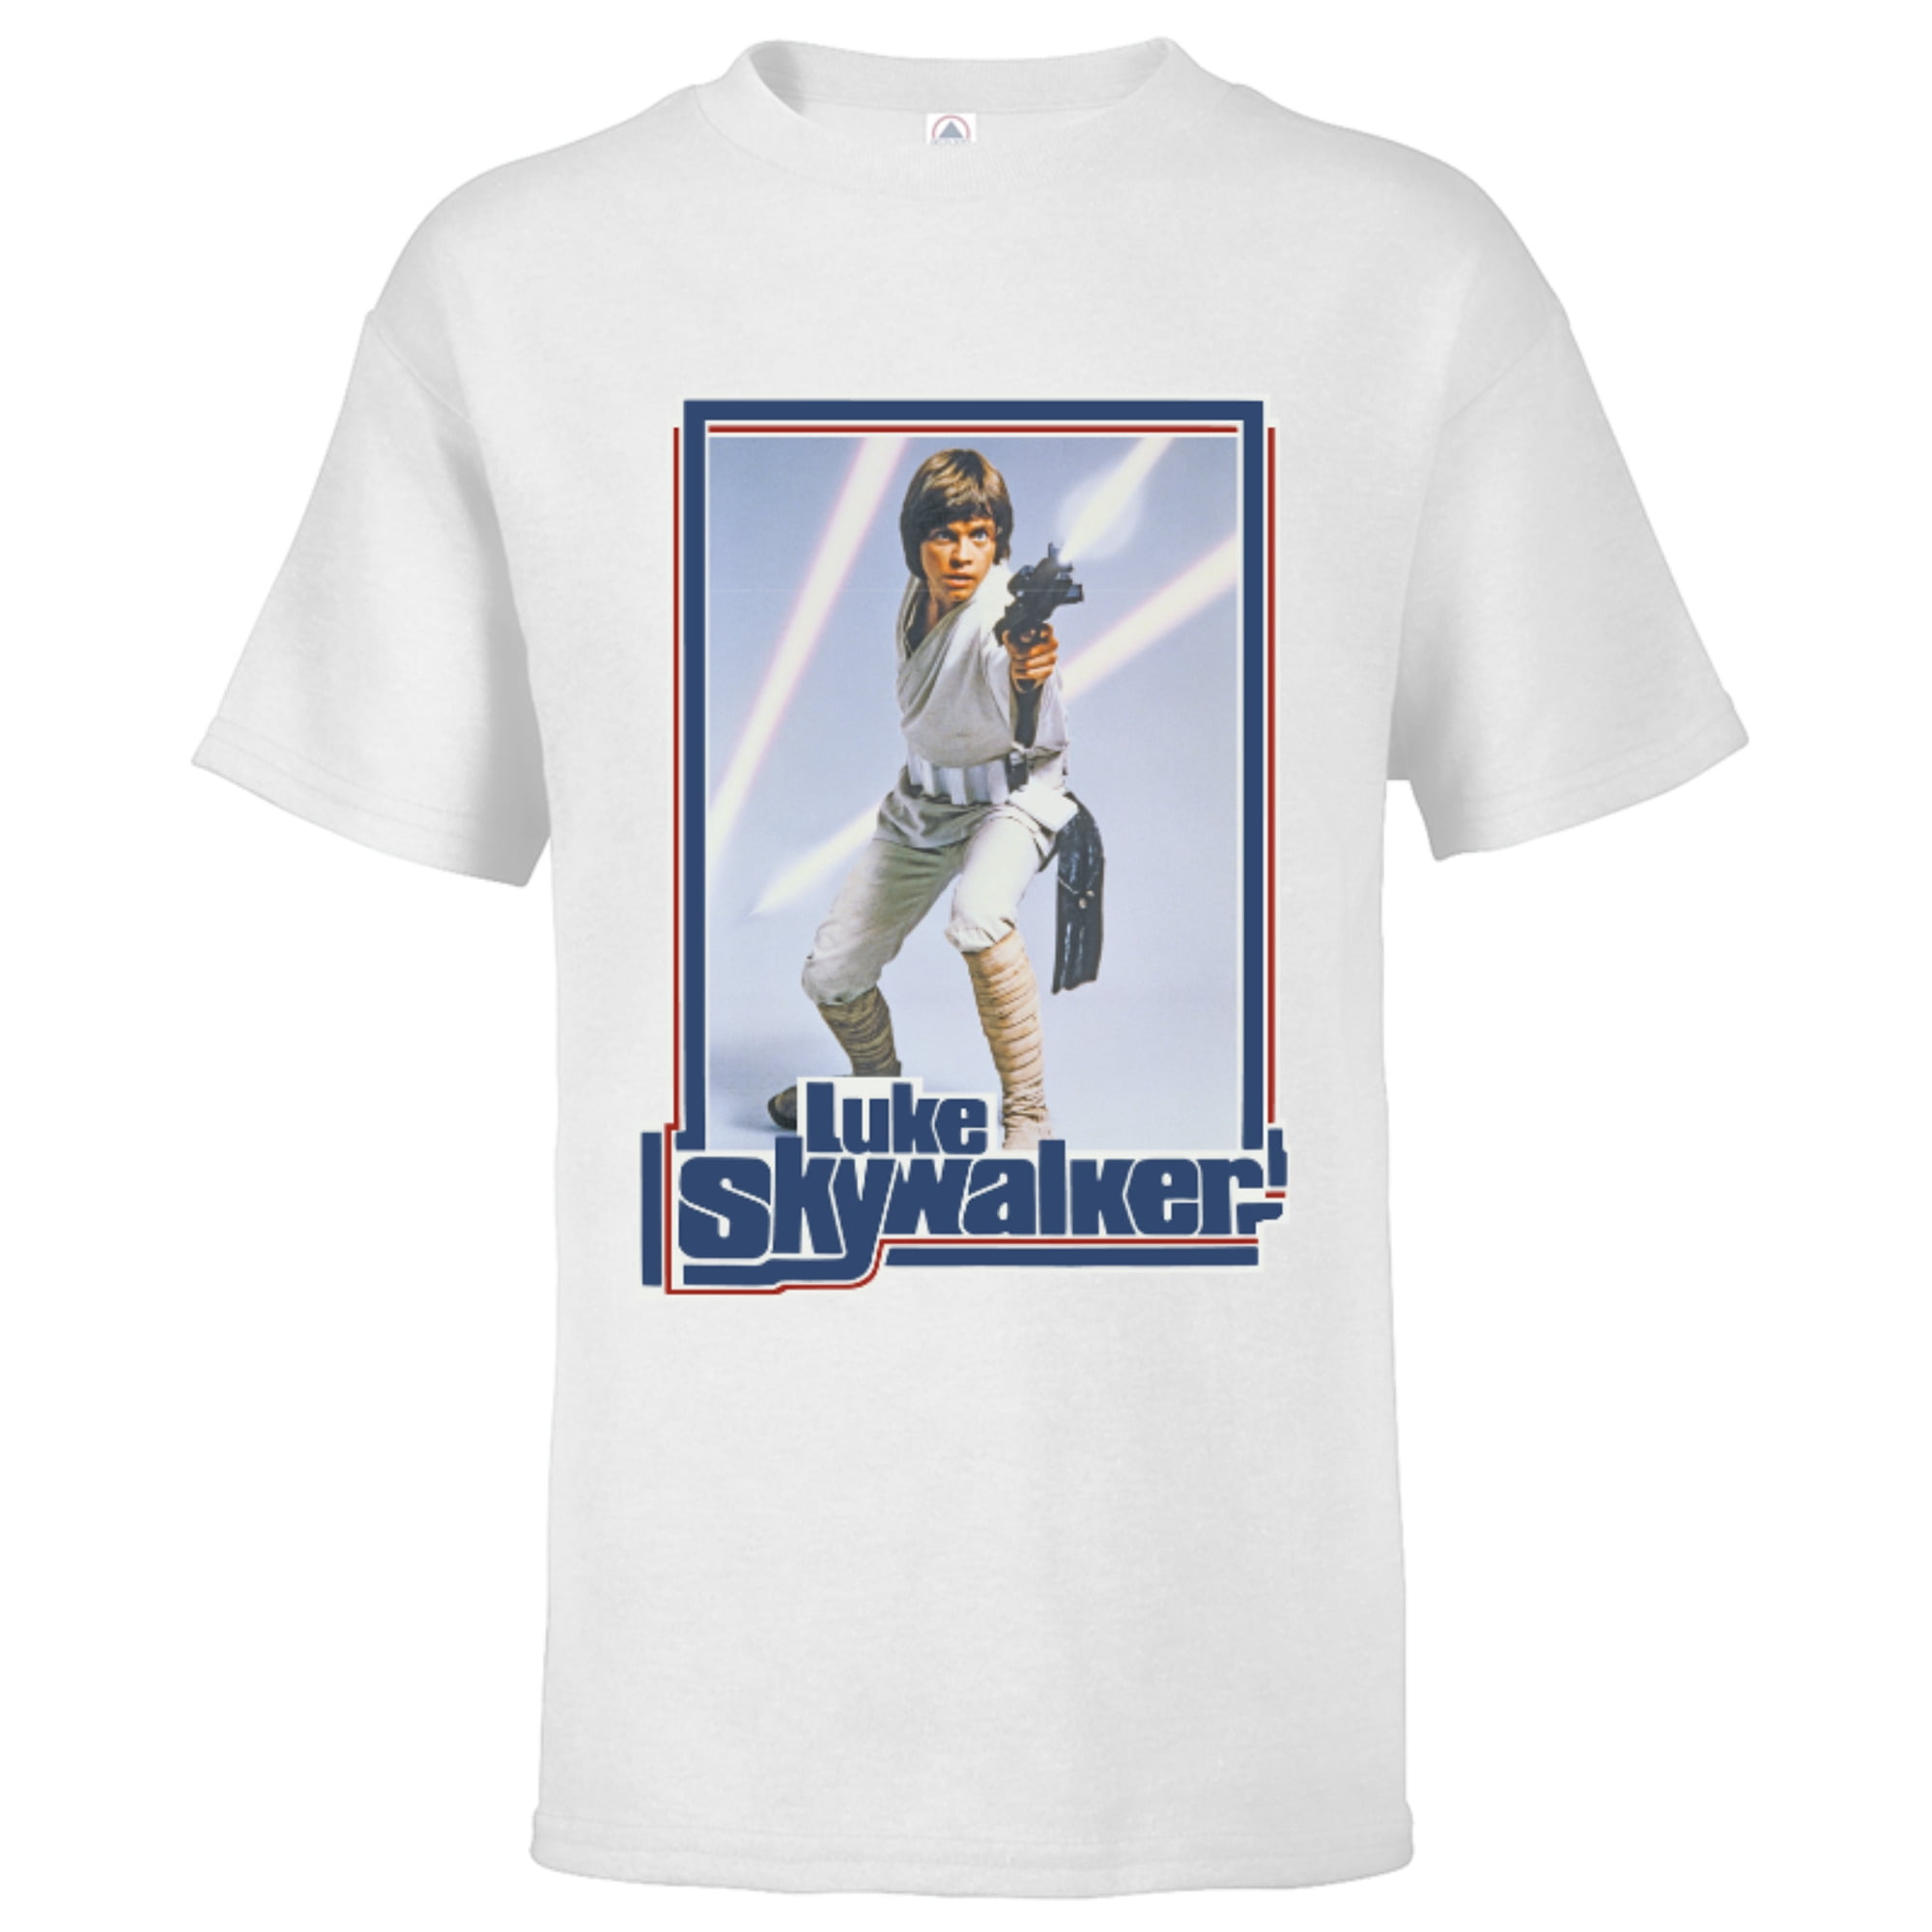 Star Wars Luke Skywalker 70s Retro - Short Sleeve T-Shirt for Kids -  Customized-White